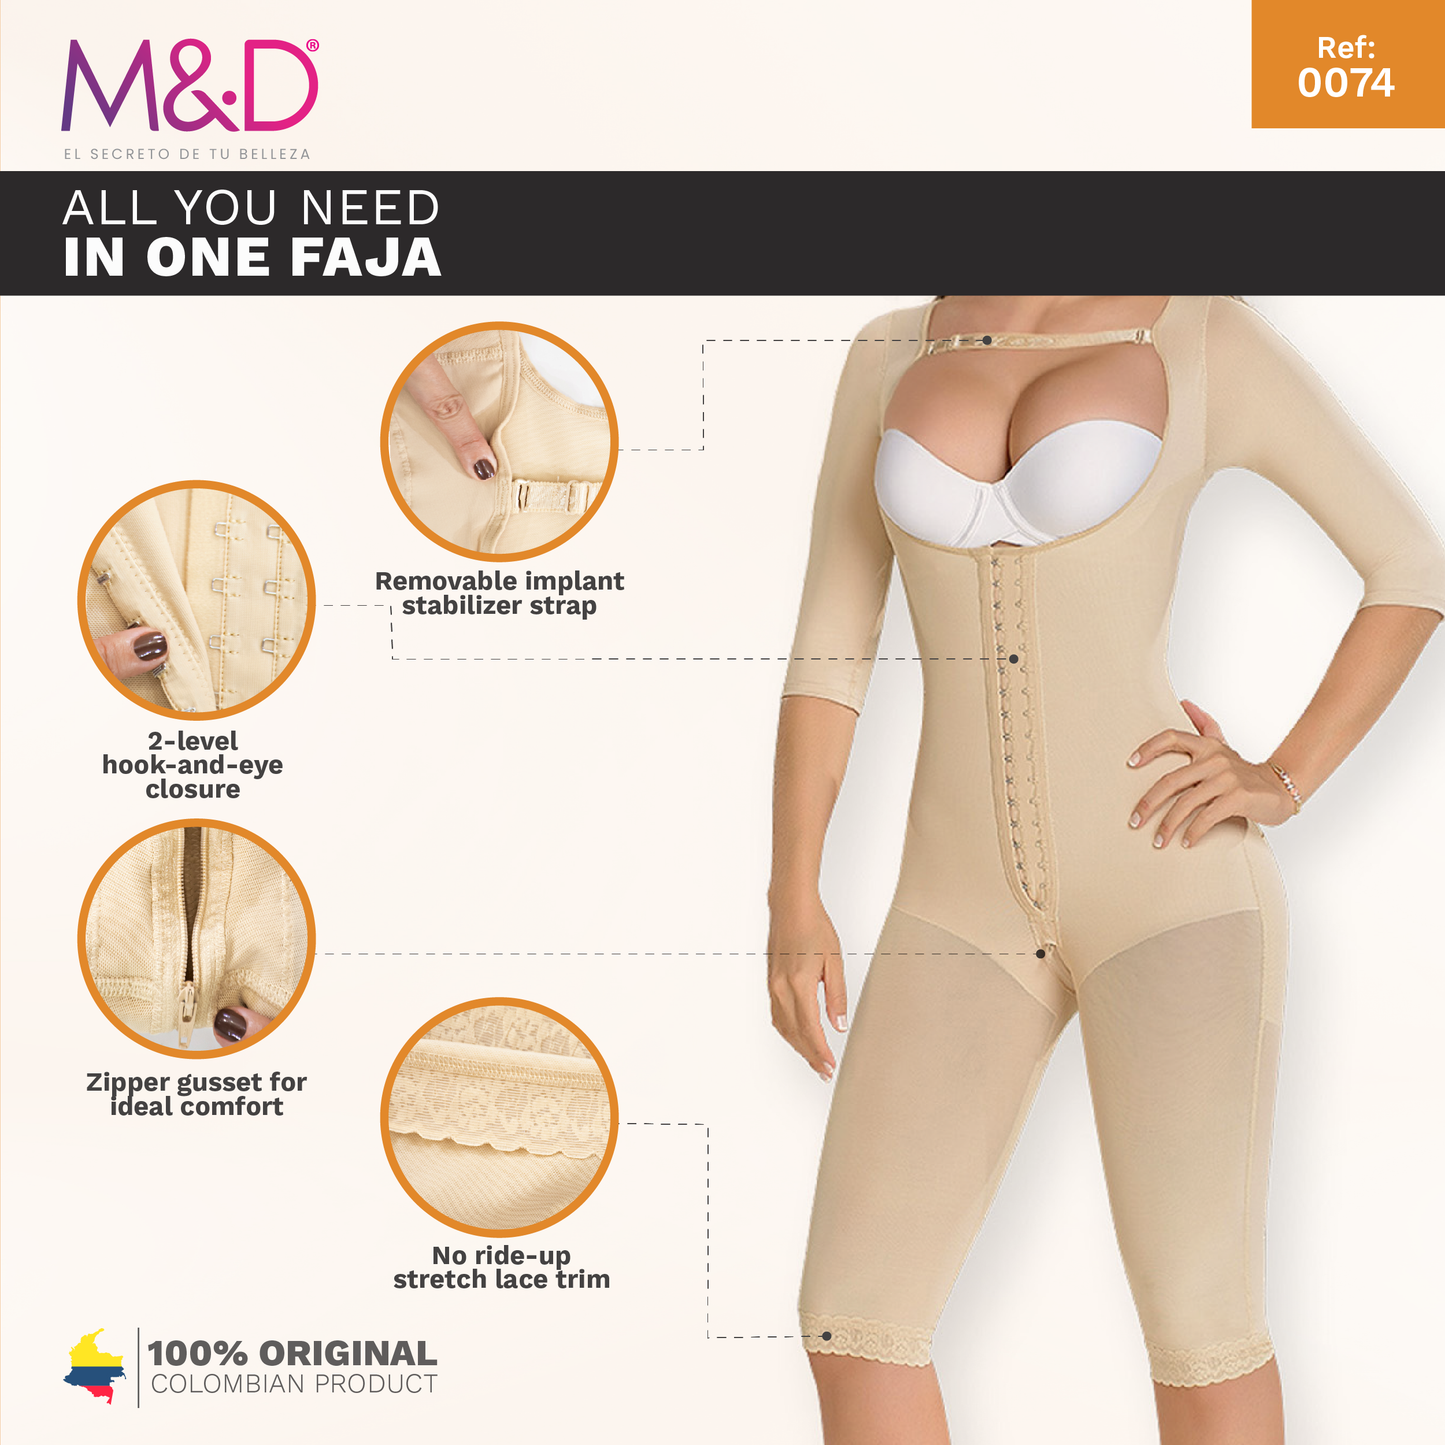 M&D 0074 | Fajas Colombianas | Full-Body Shaper For Women